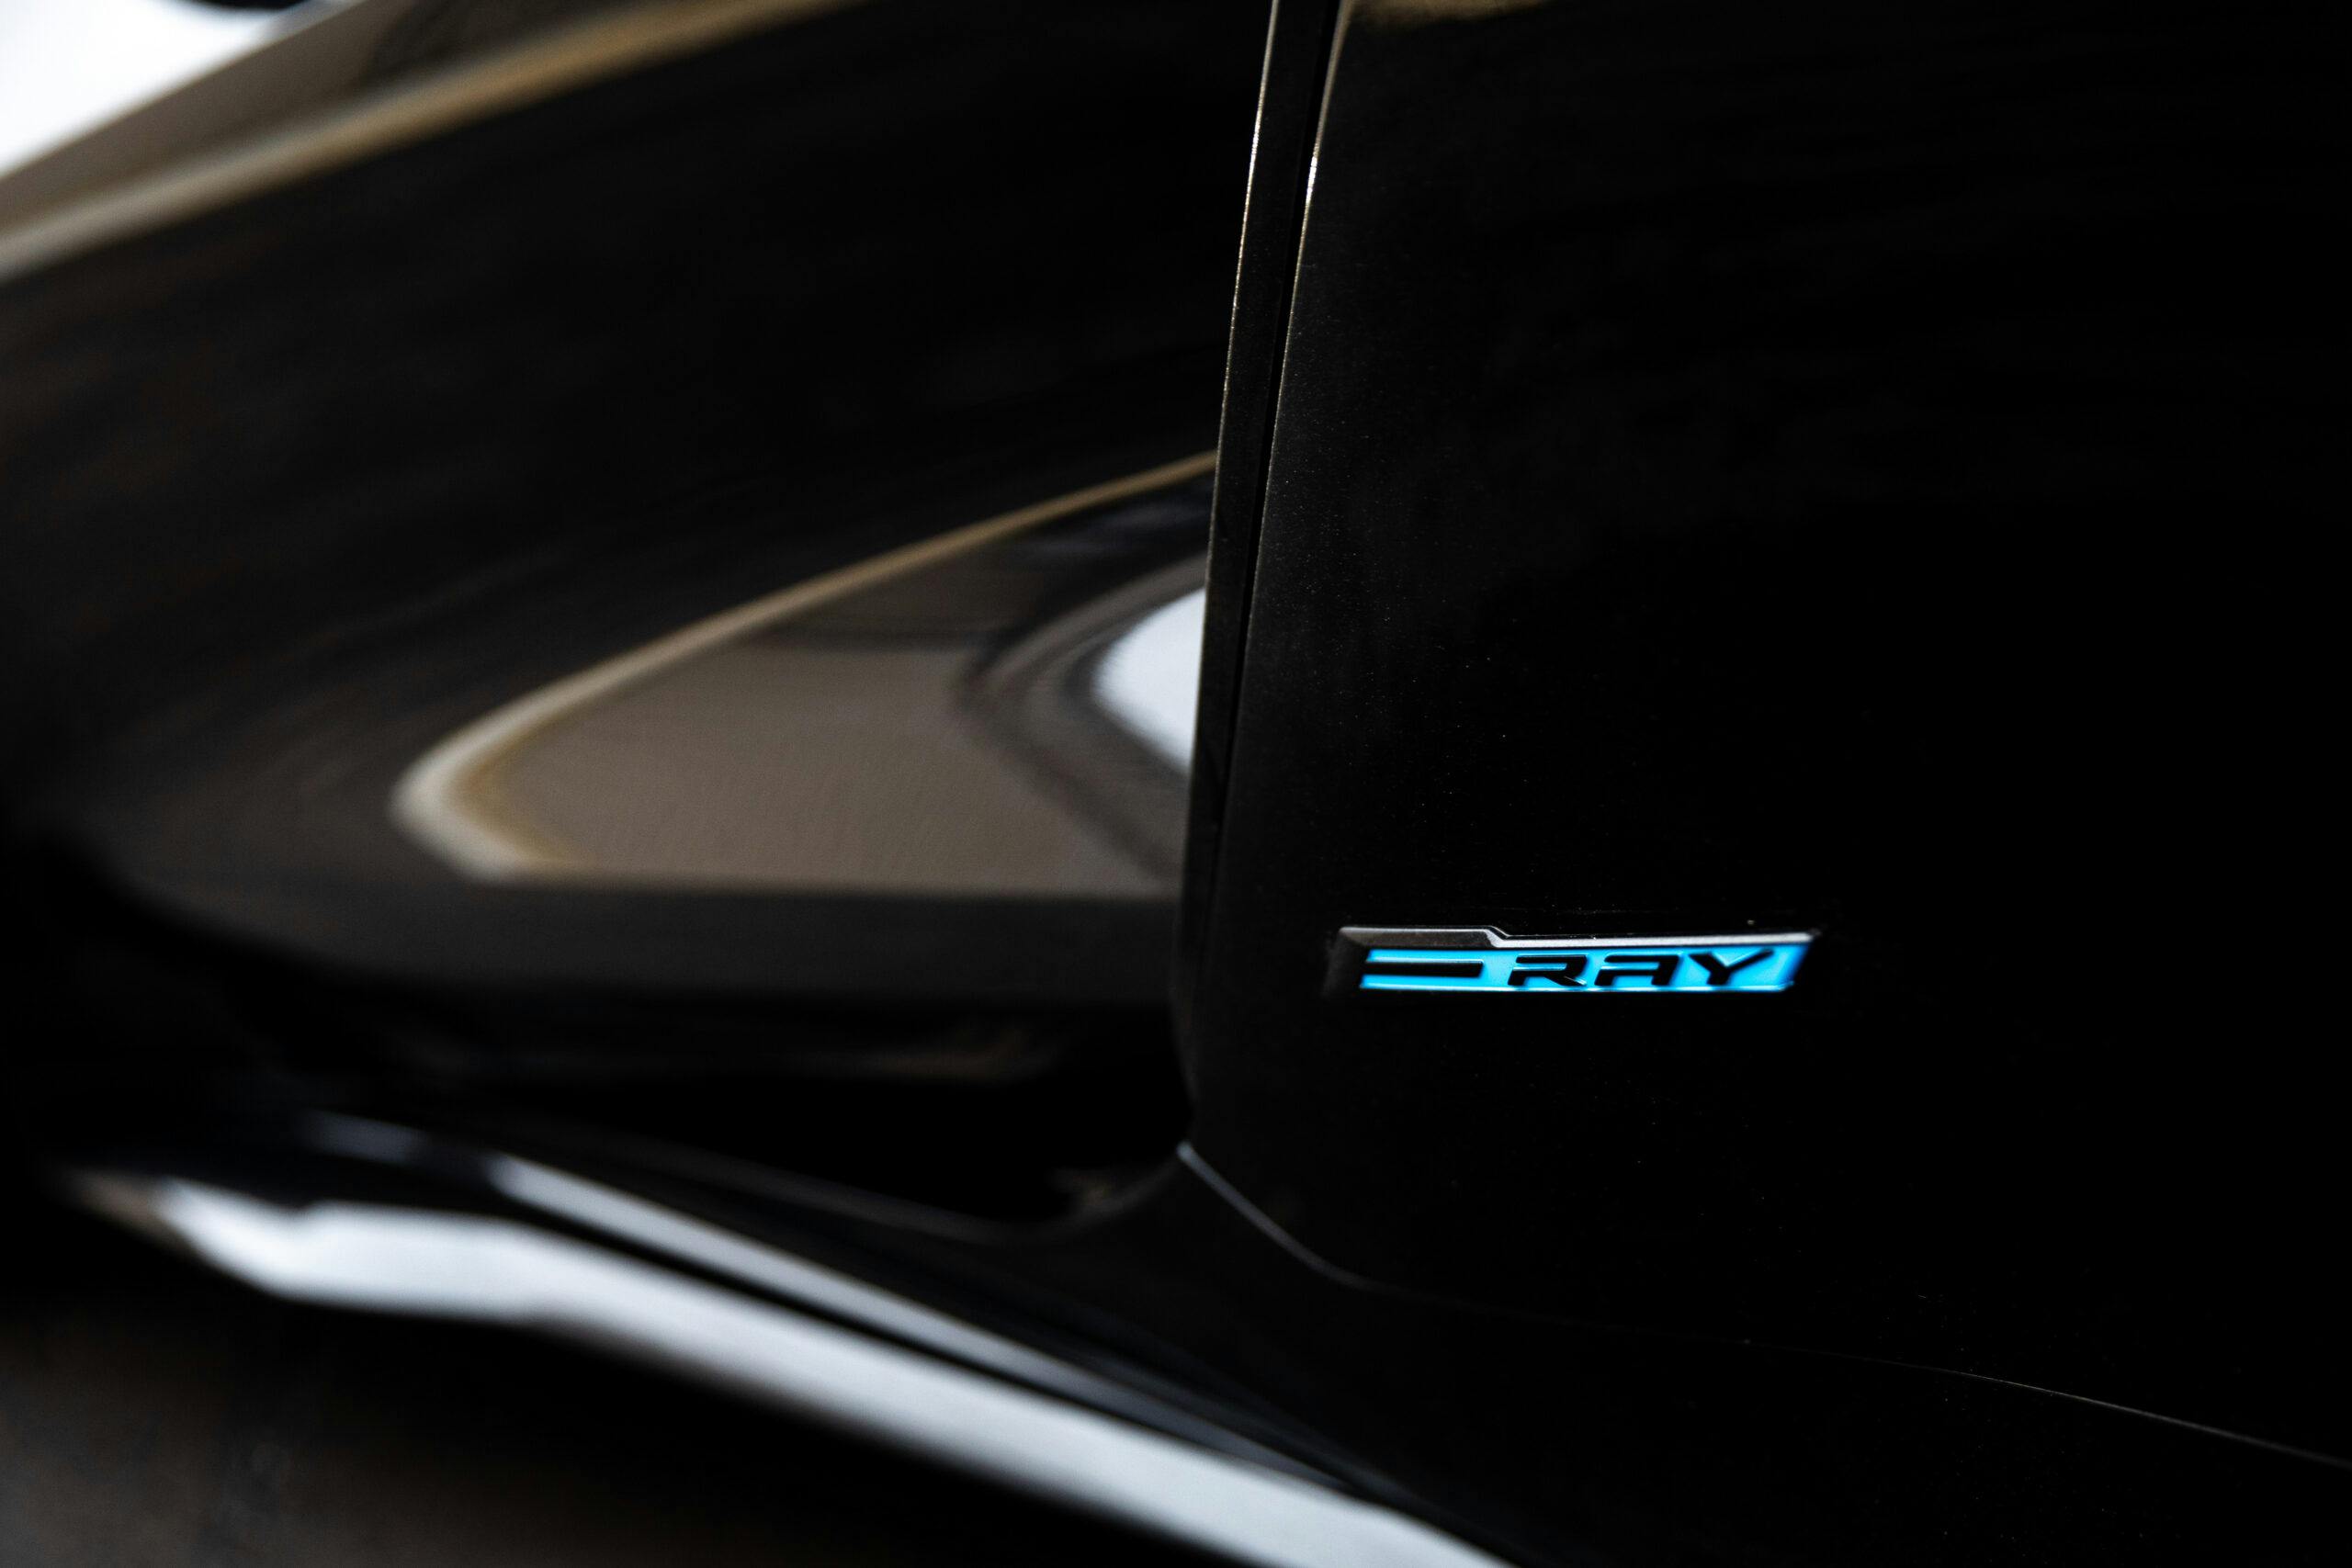 New Corvette E-Ray hybrid badge